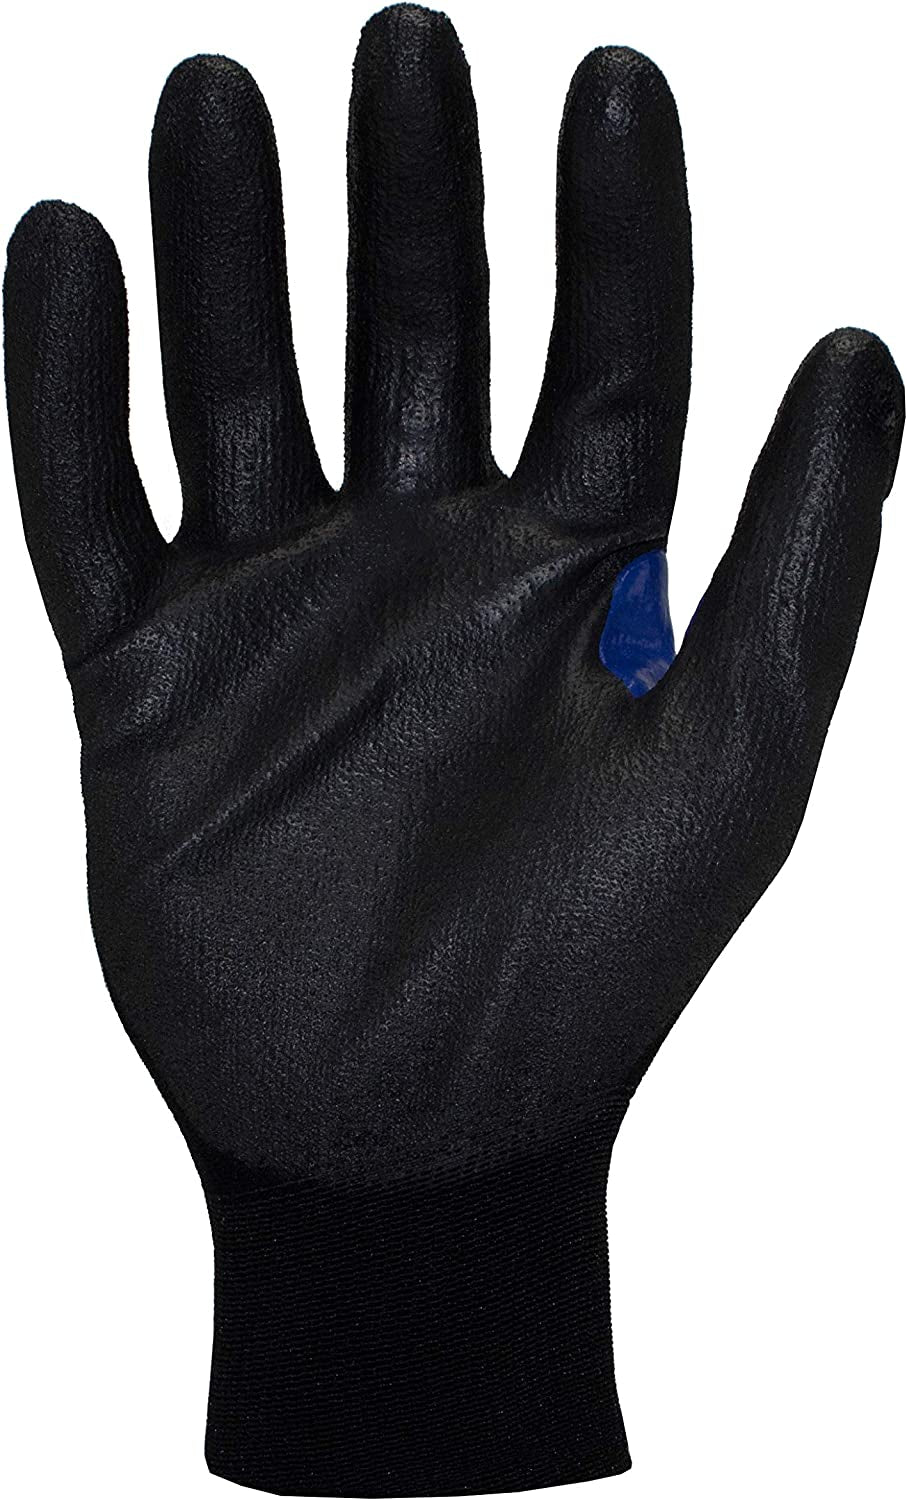 secretgreen.com.au, KKC1PU-04-L Knit A1 Polyurethane Touchscreen Cut Resistant Gloves, Large, Black